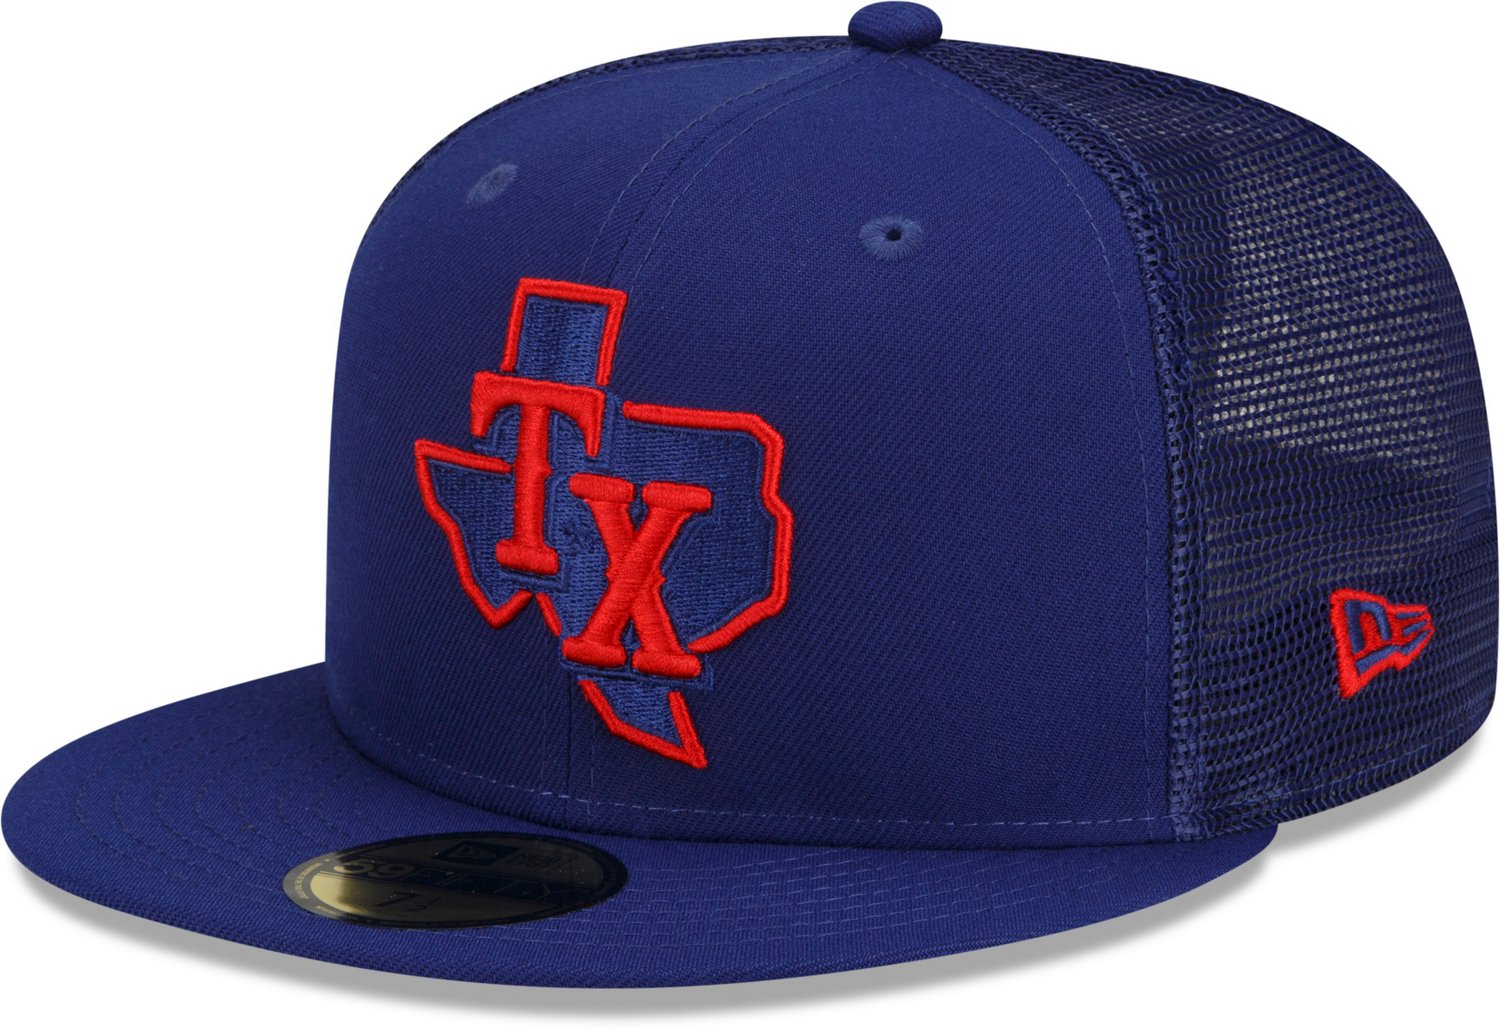 Men's Texas Rangers MLB White Home Custom Jersey, Rangers Gifts